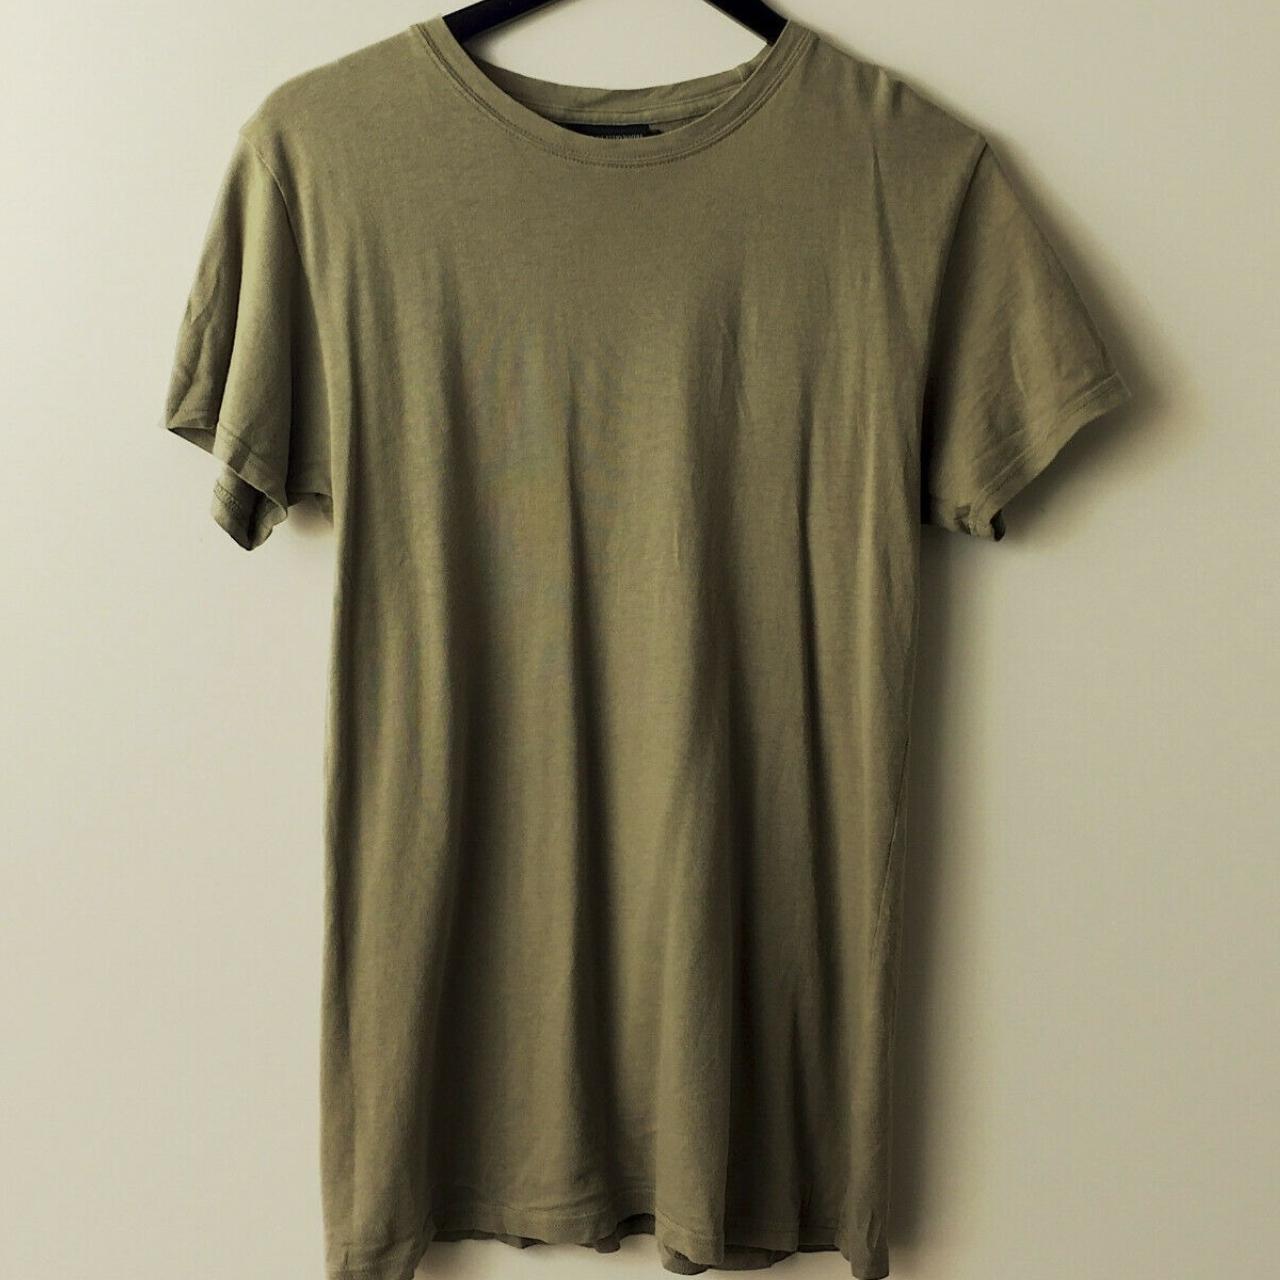 Product Image 1 - KNYEW T Shirt Basic Minimal